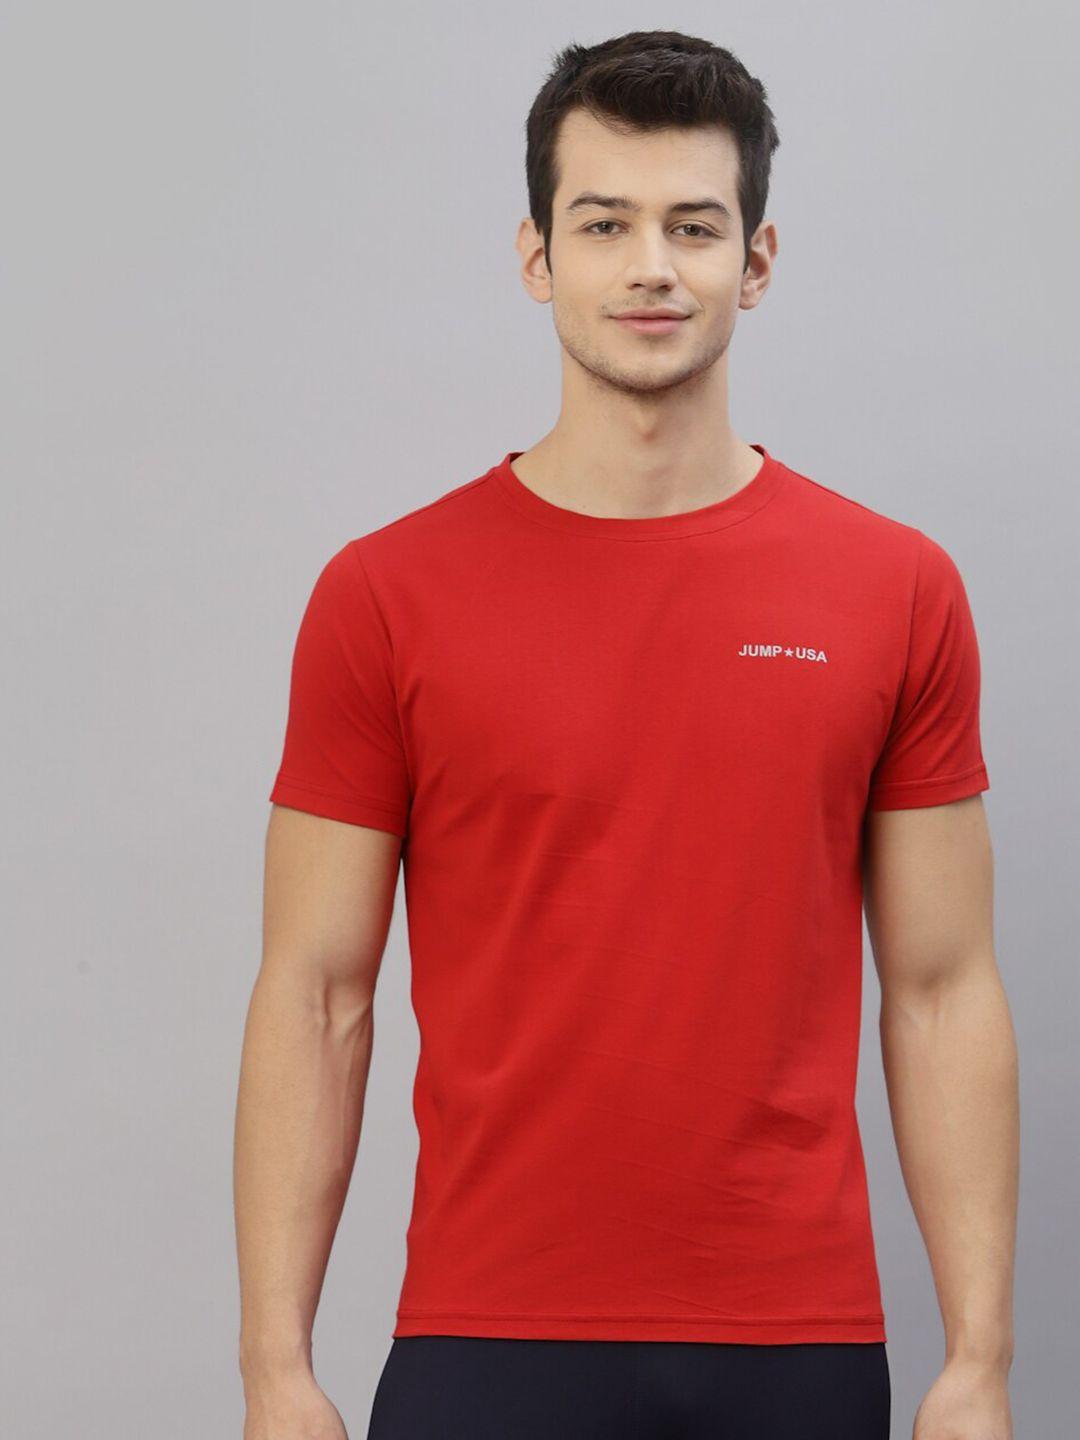 jump usa men red t-shirt